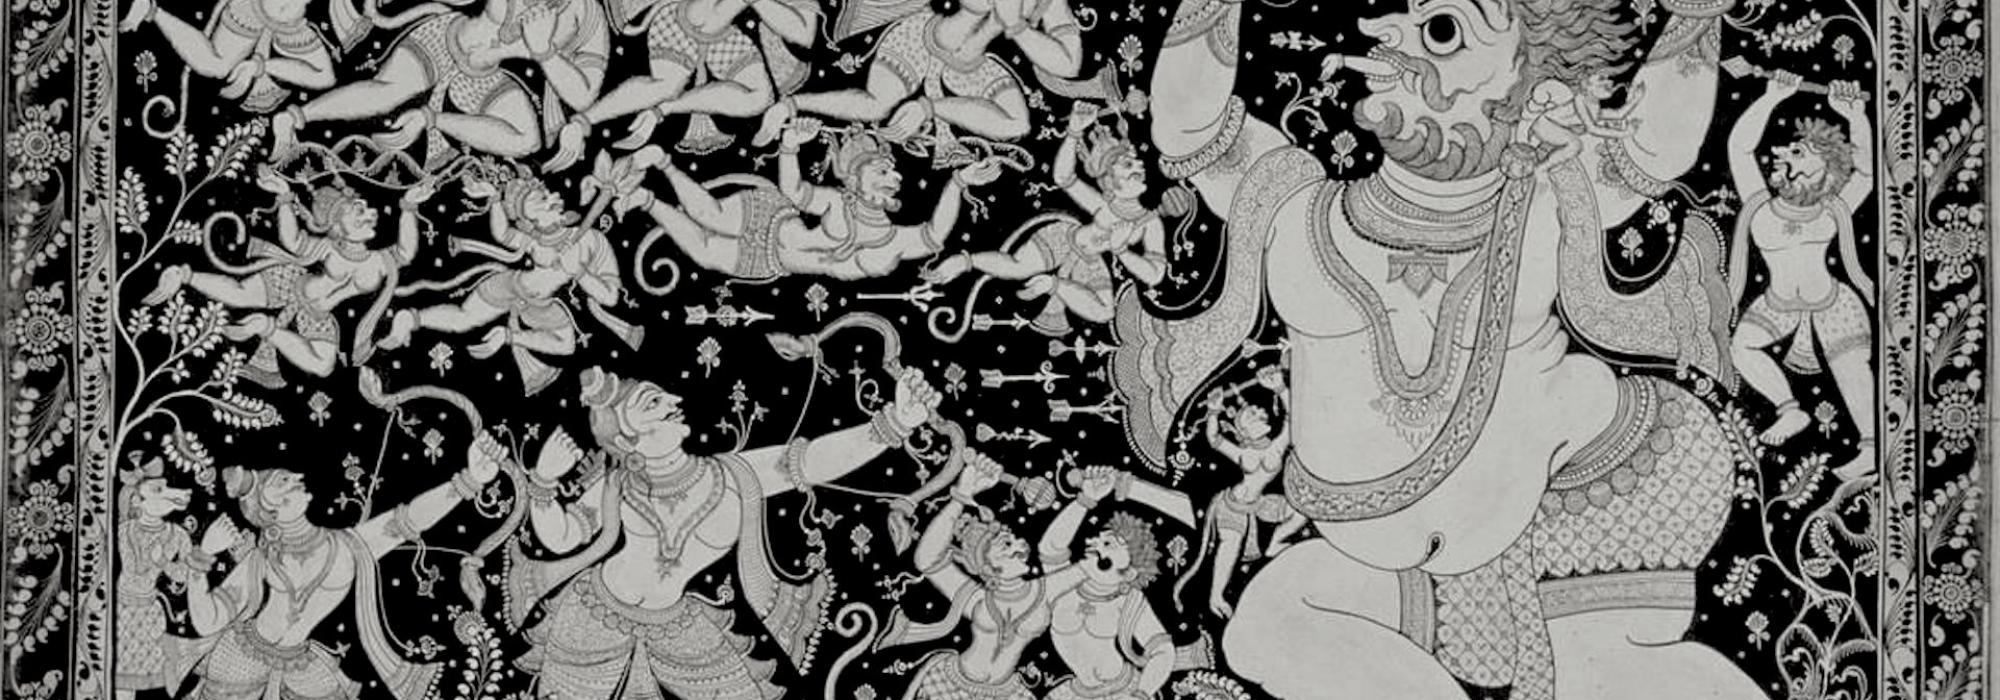 Ramayana War